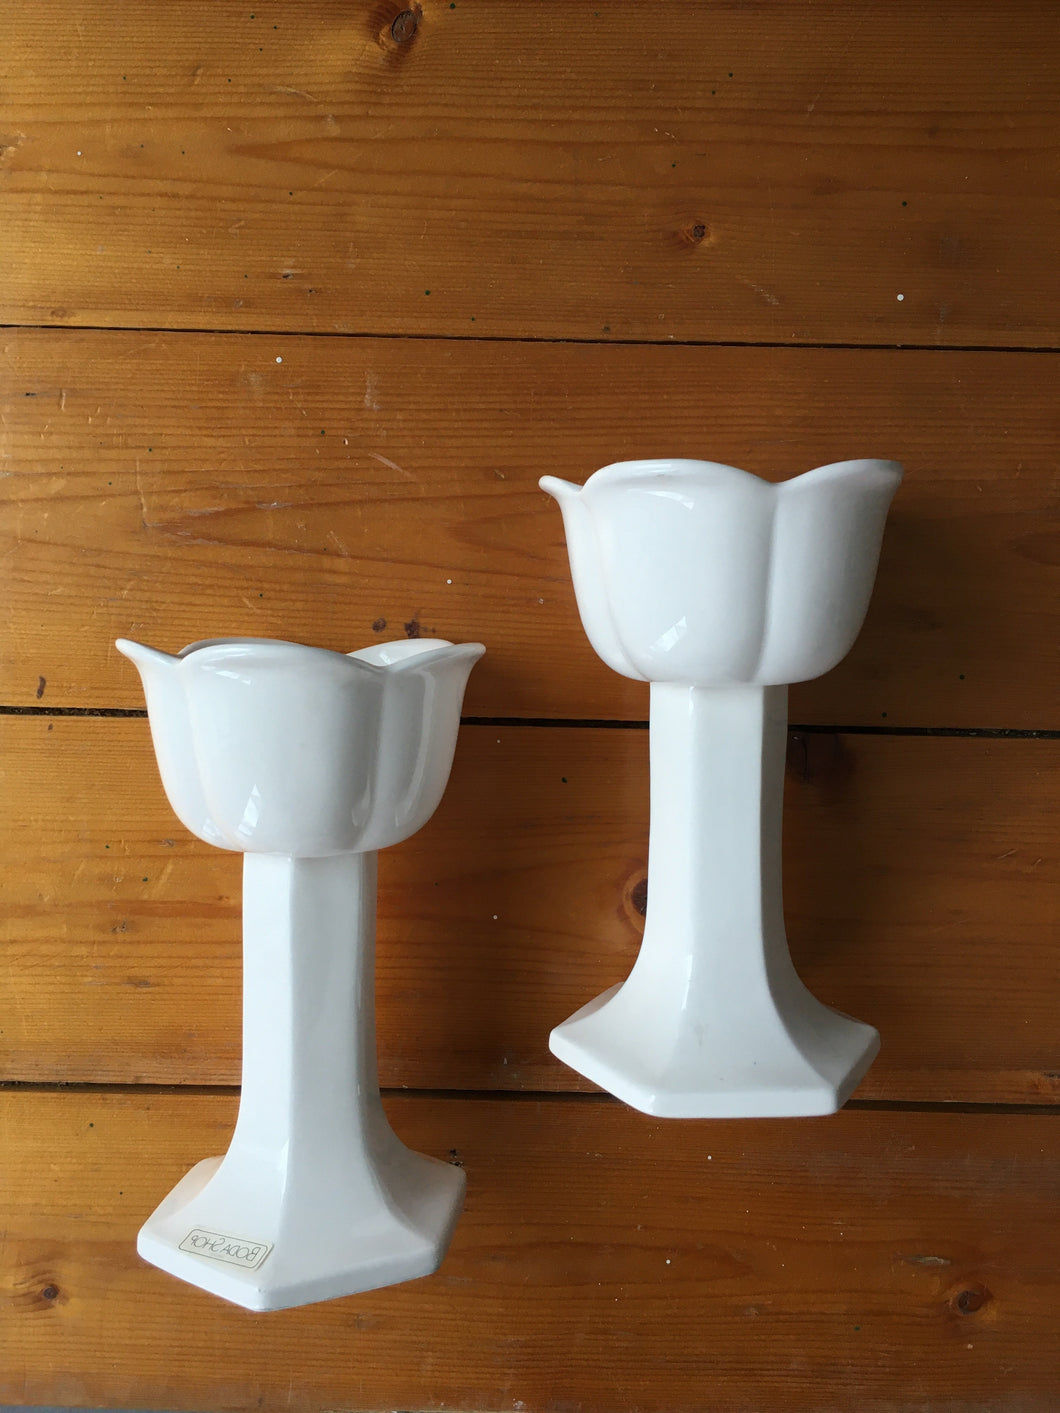 Boda white flower shaped tealight holders